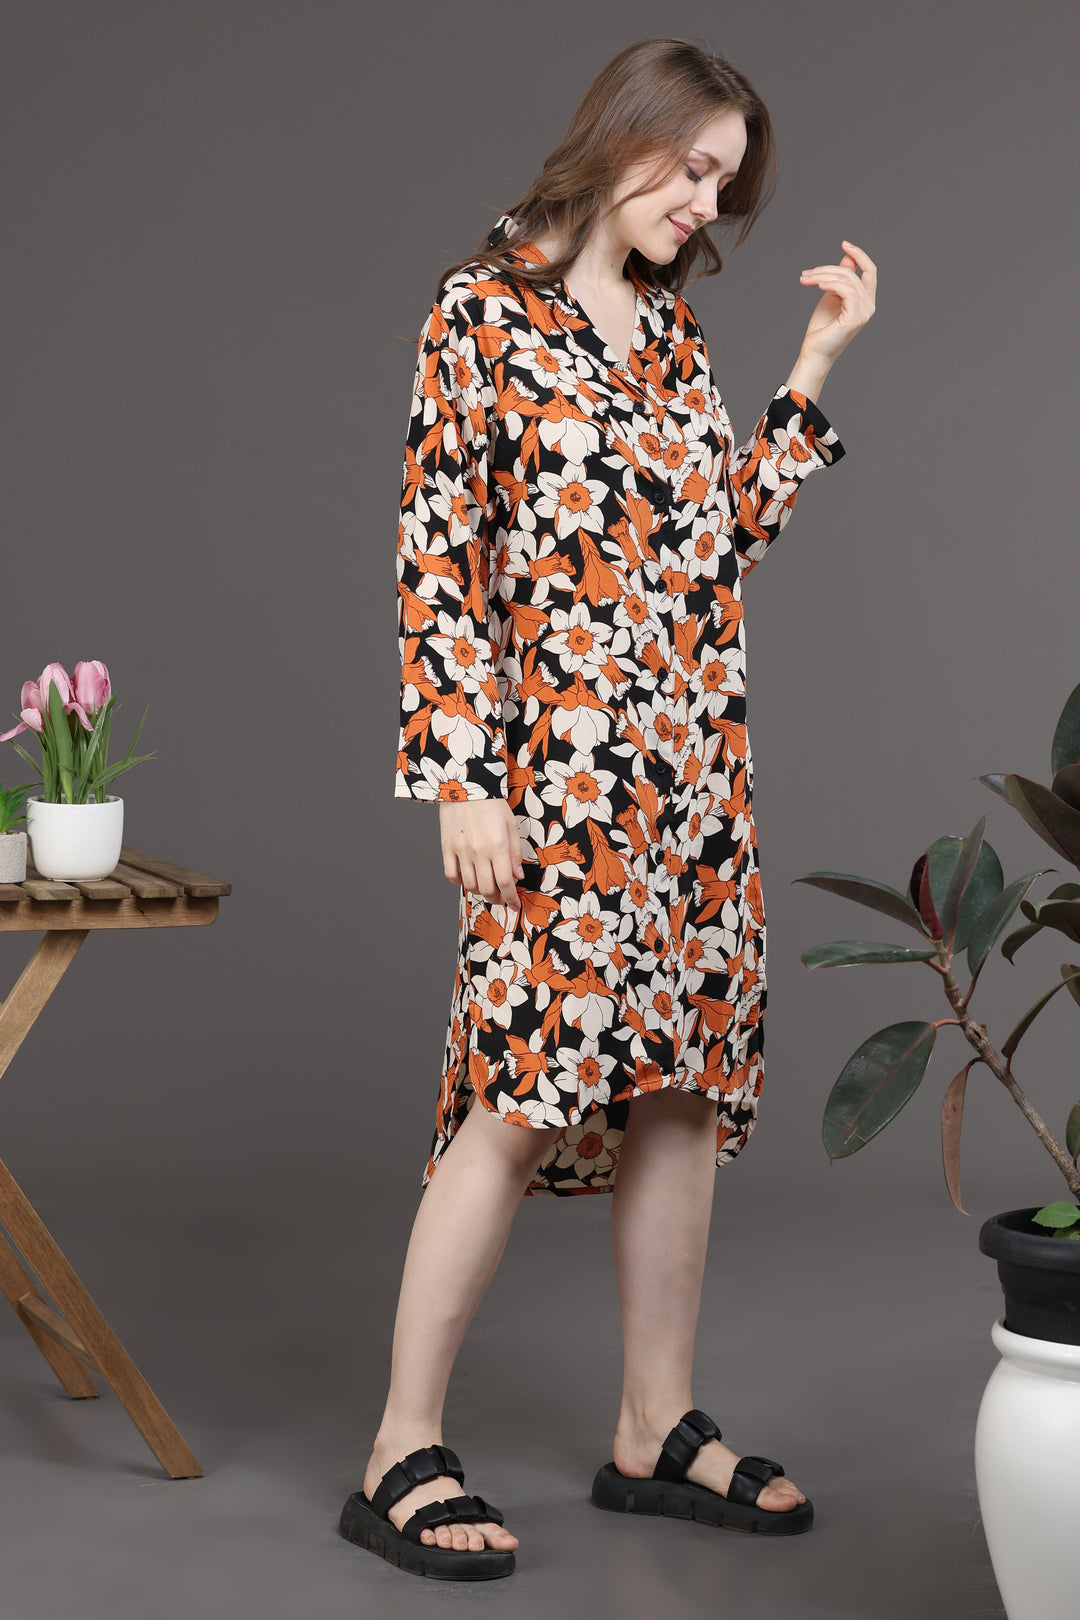 Elegant Floral Dress(Orange/black)